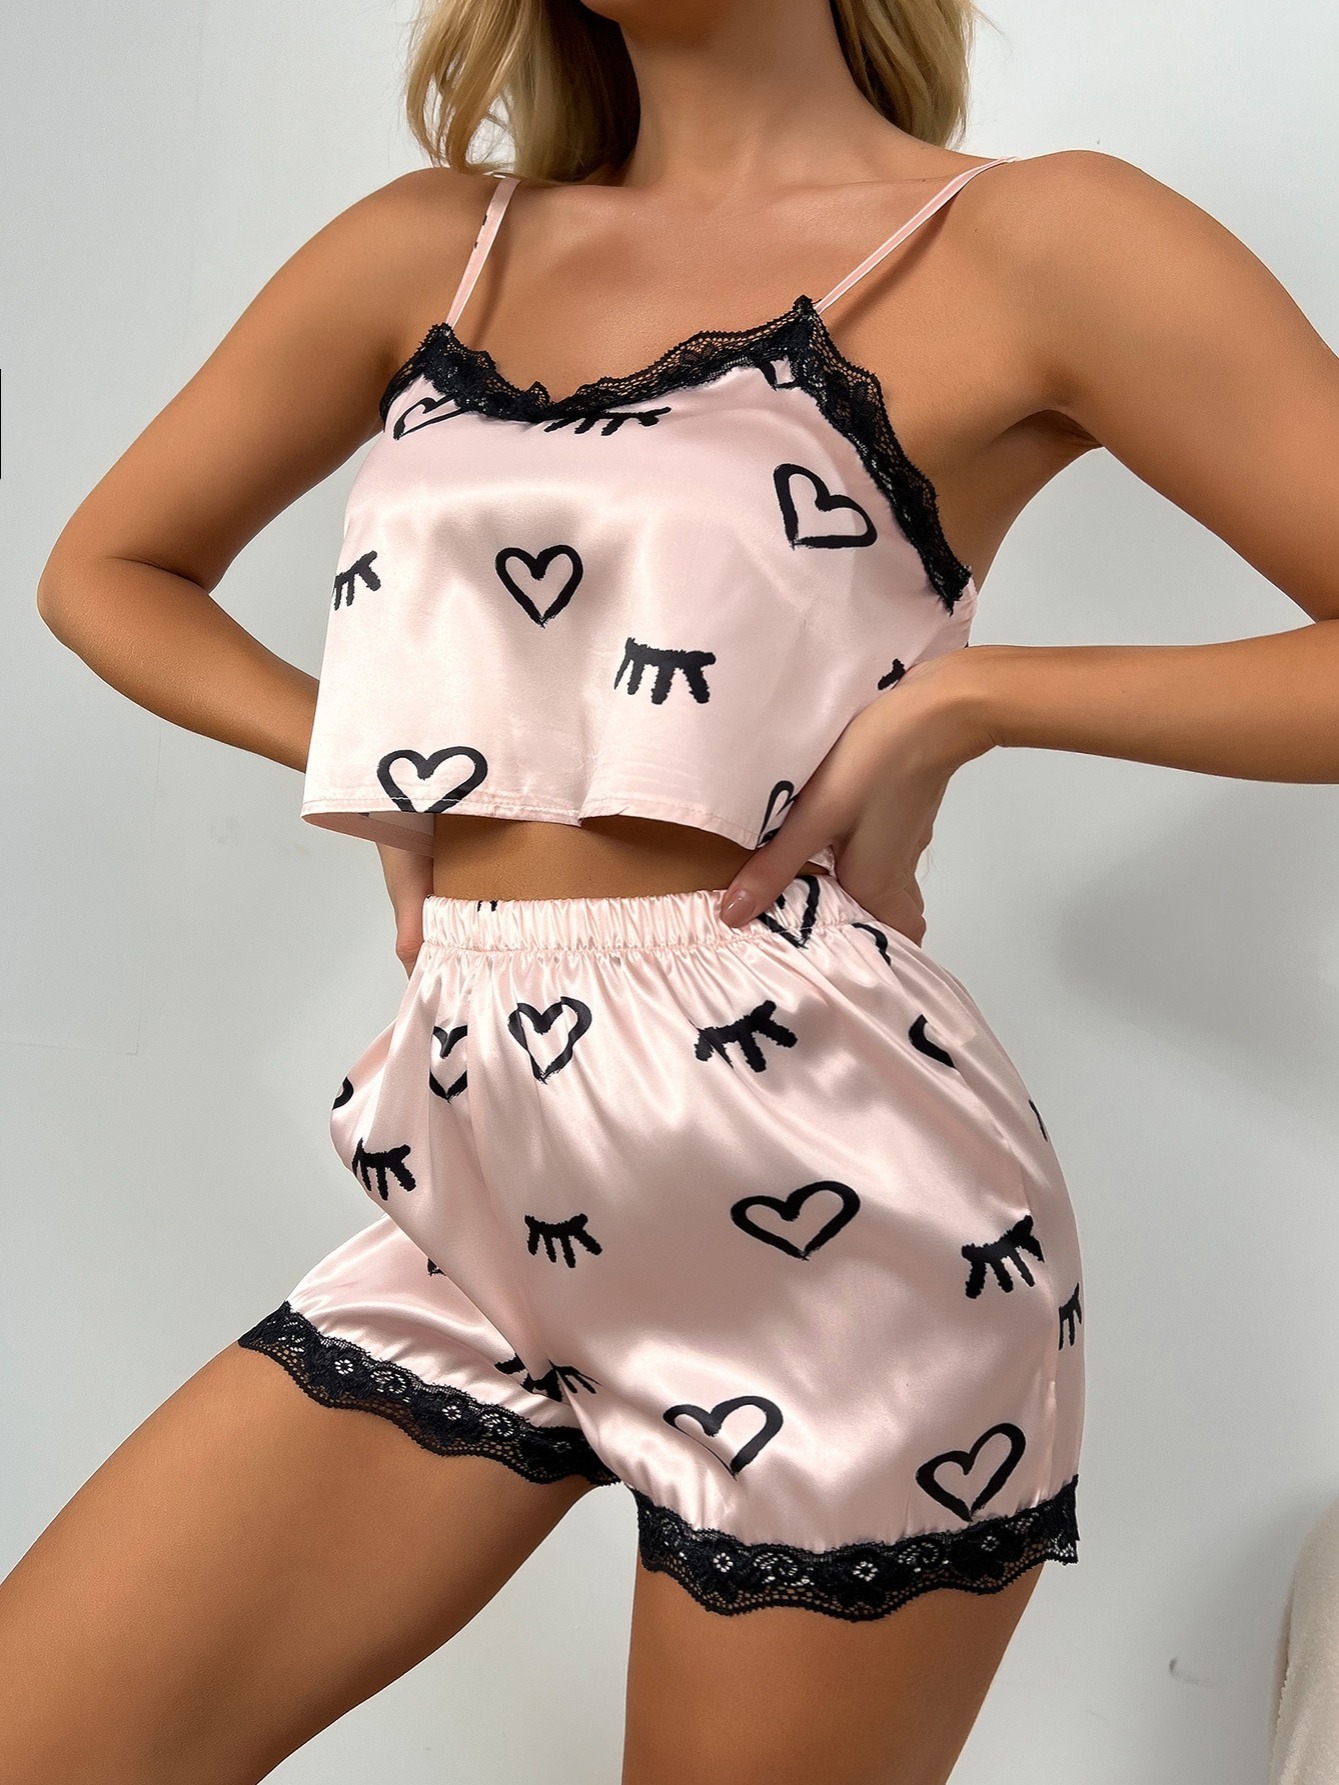 Women Lace Sleepwear Cami Shorts Set Lingerie Pajamas Pjs Babydoll Nightwear